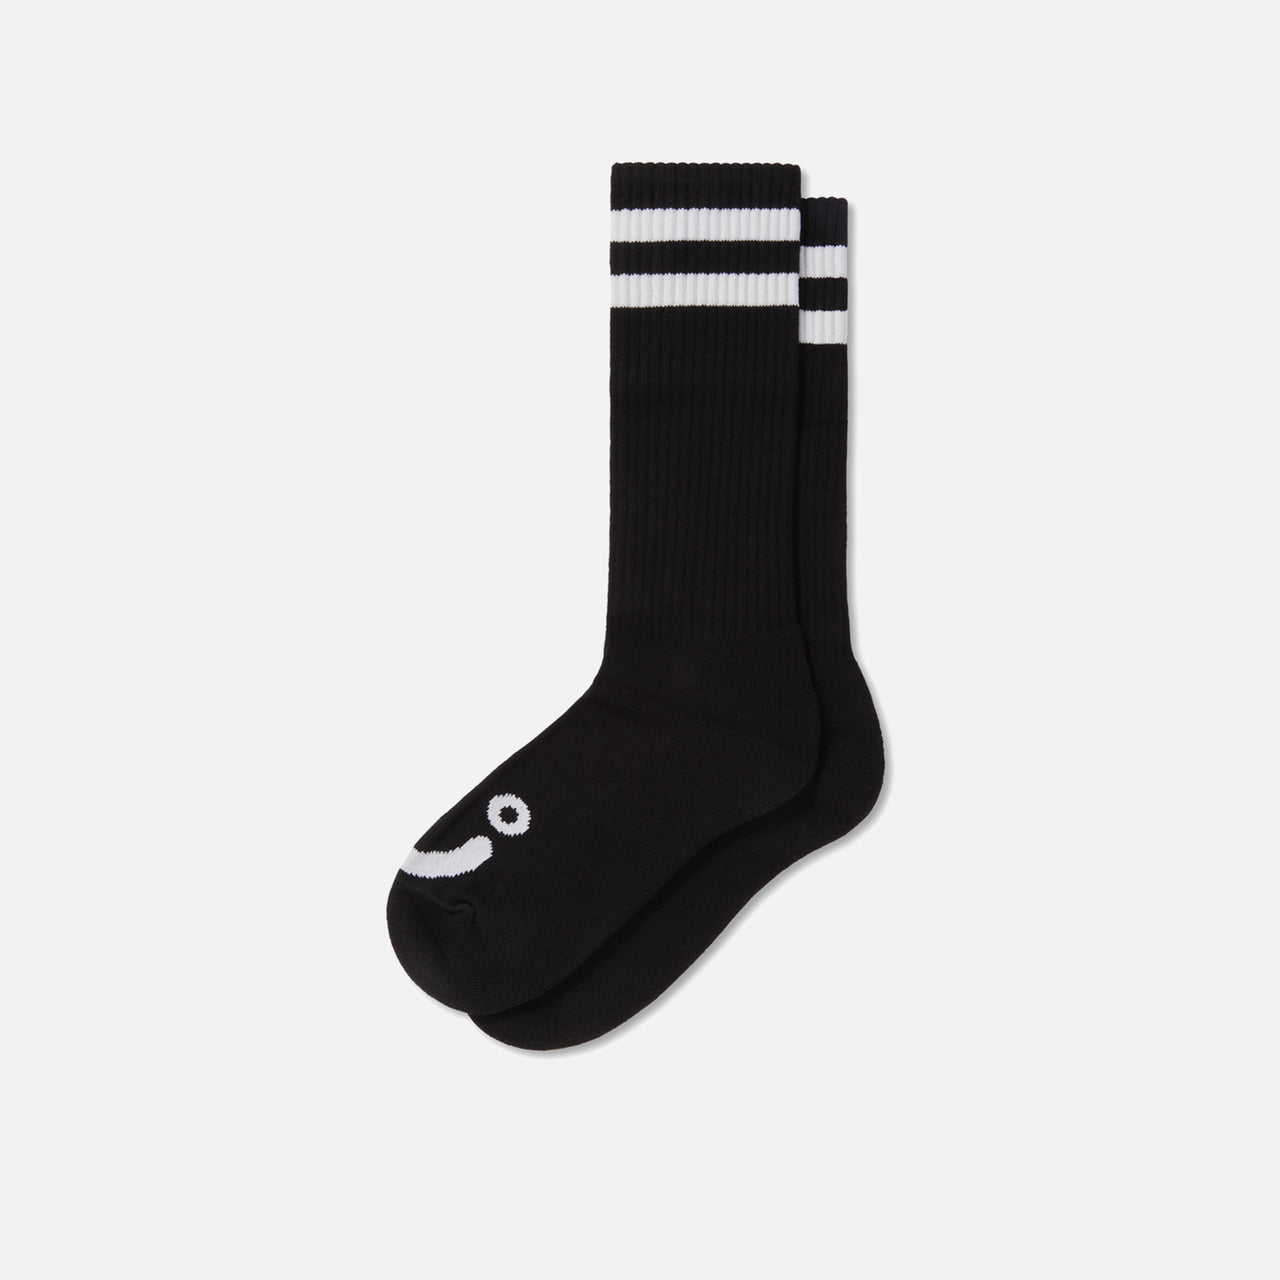 Rib Socks Long Happy Sad - Black